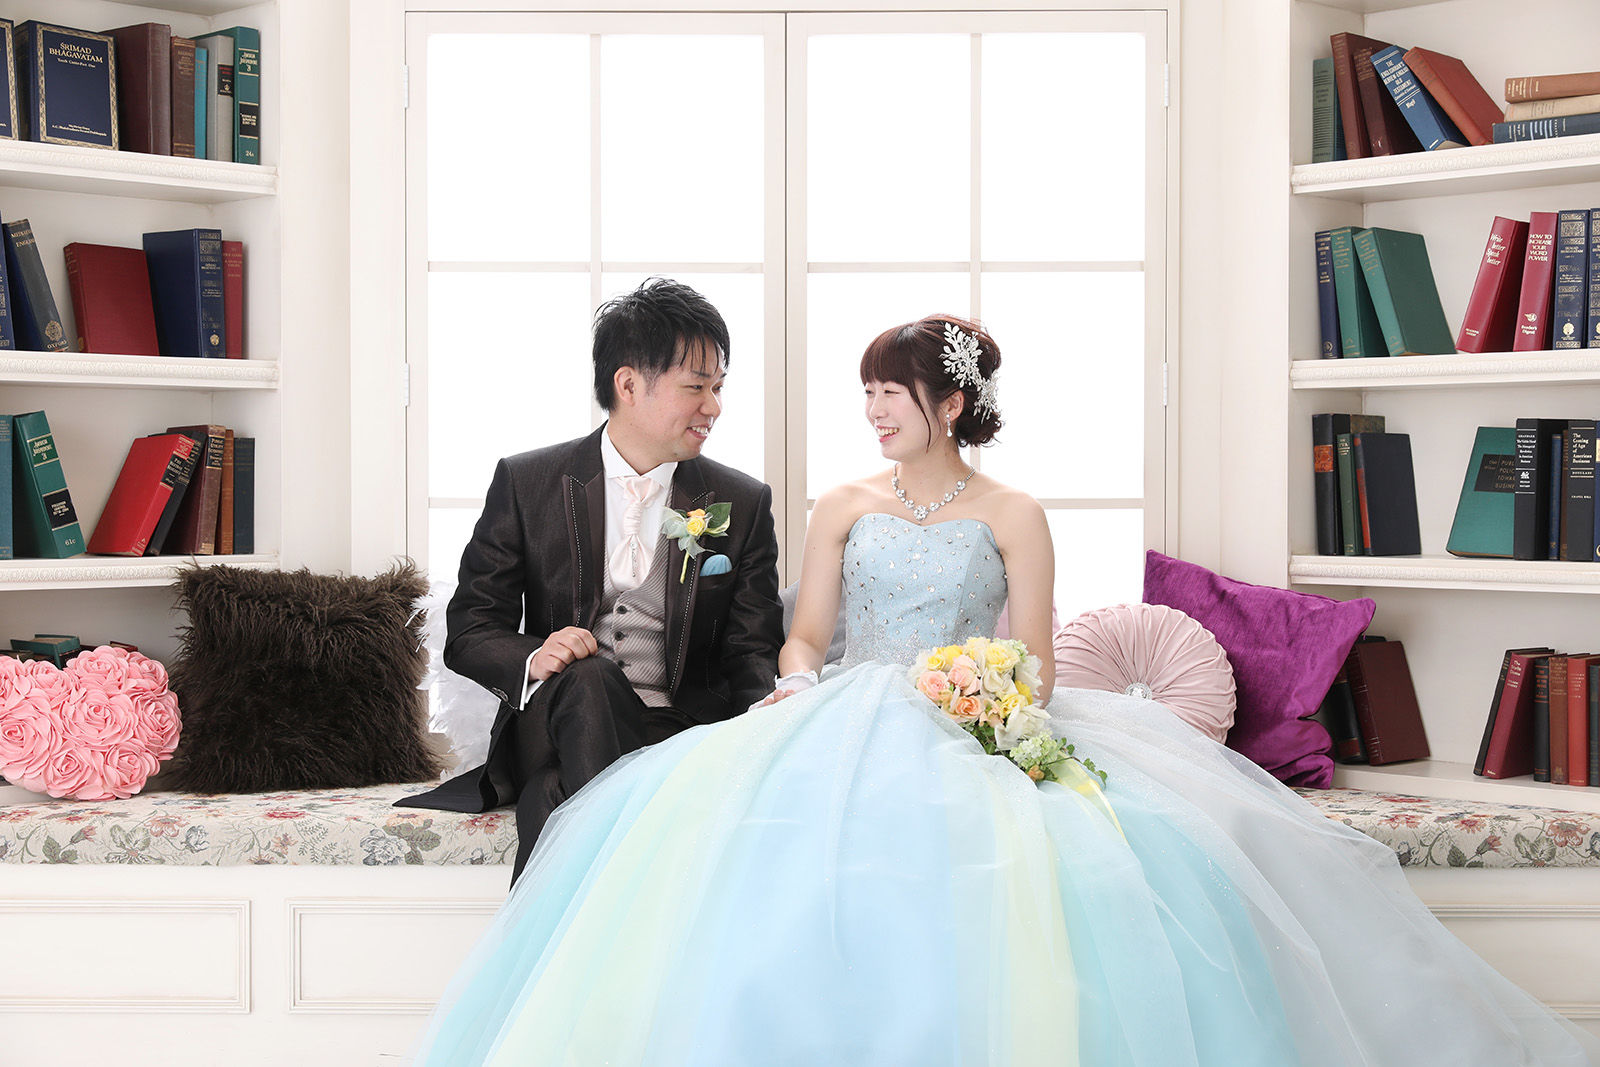 公式 ウェディングレポート みんなが笑顔で楽しめた結婚式 広島の結婚式場 ホテルメルパルク広島